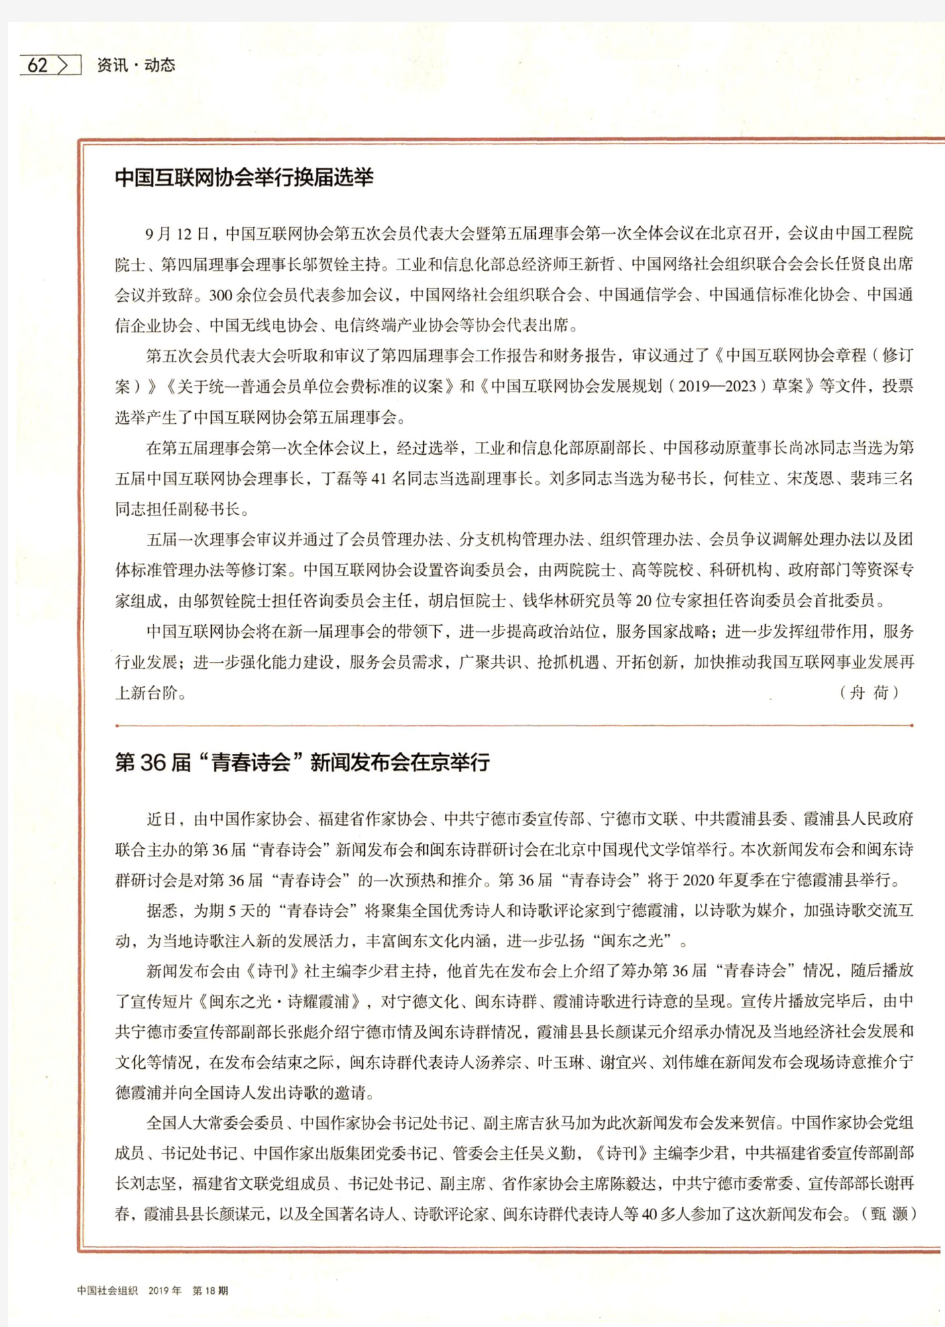 中国互联网协会举行换届选举